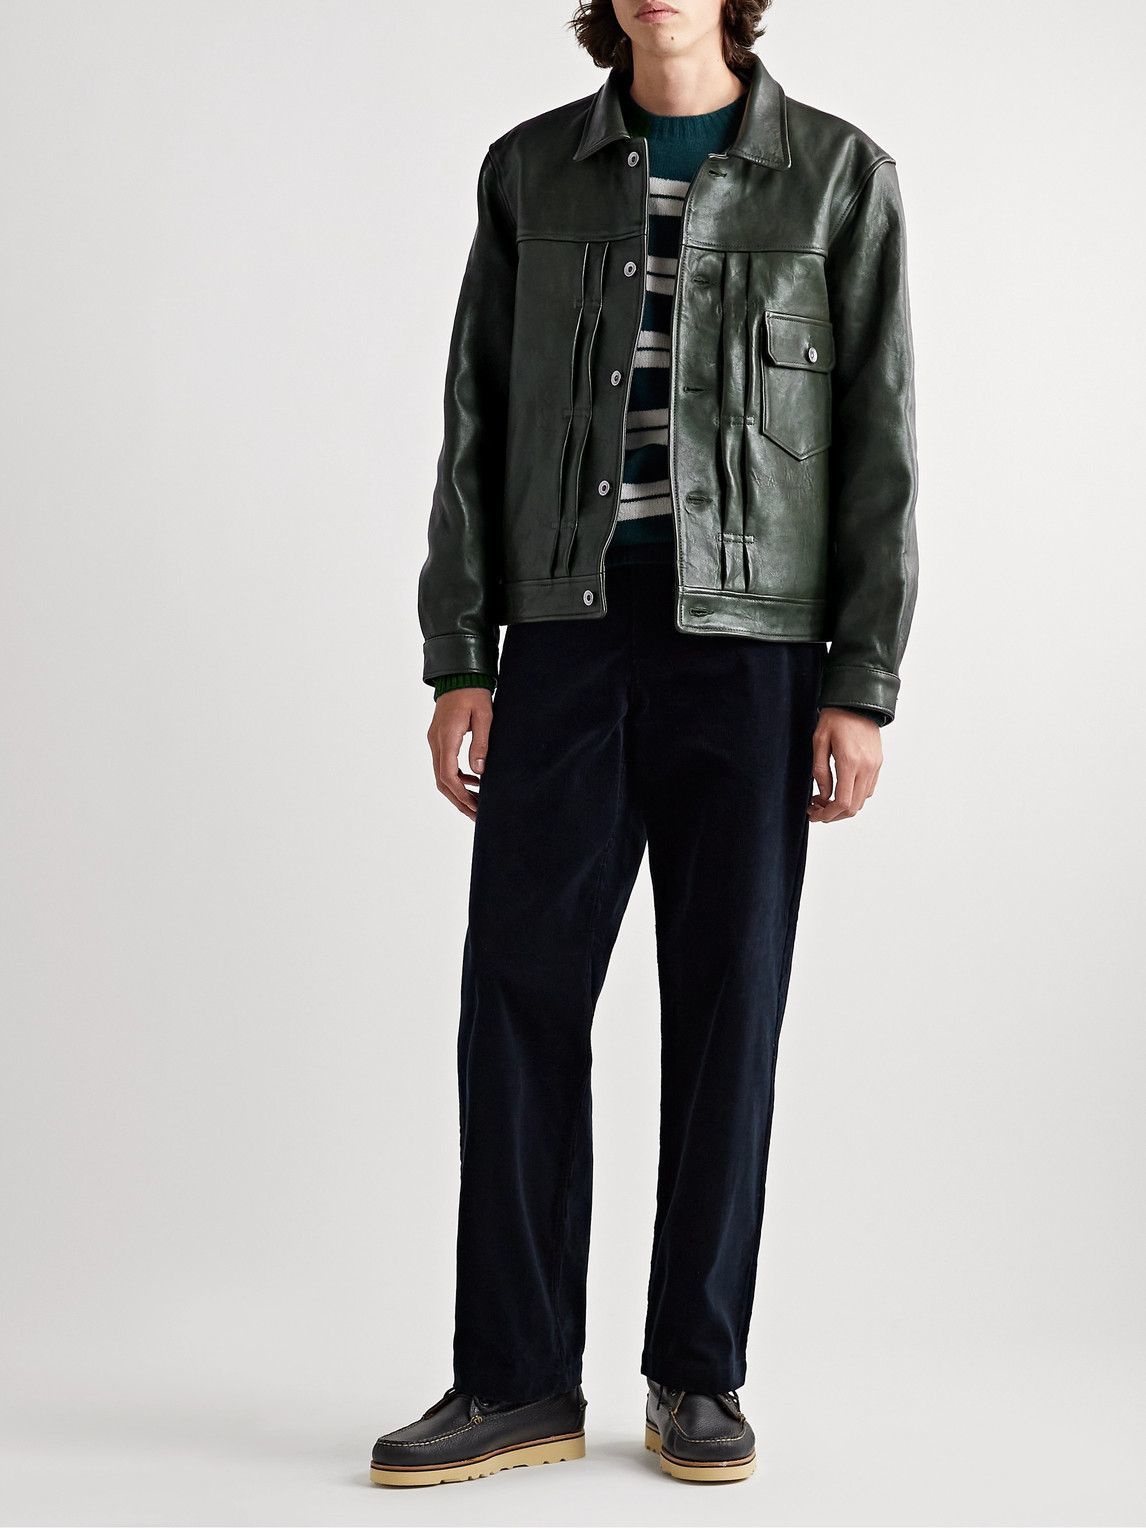 YMC - MK2 Leather Jacket - Green YMC